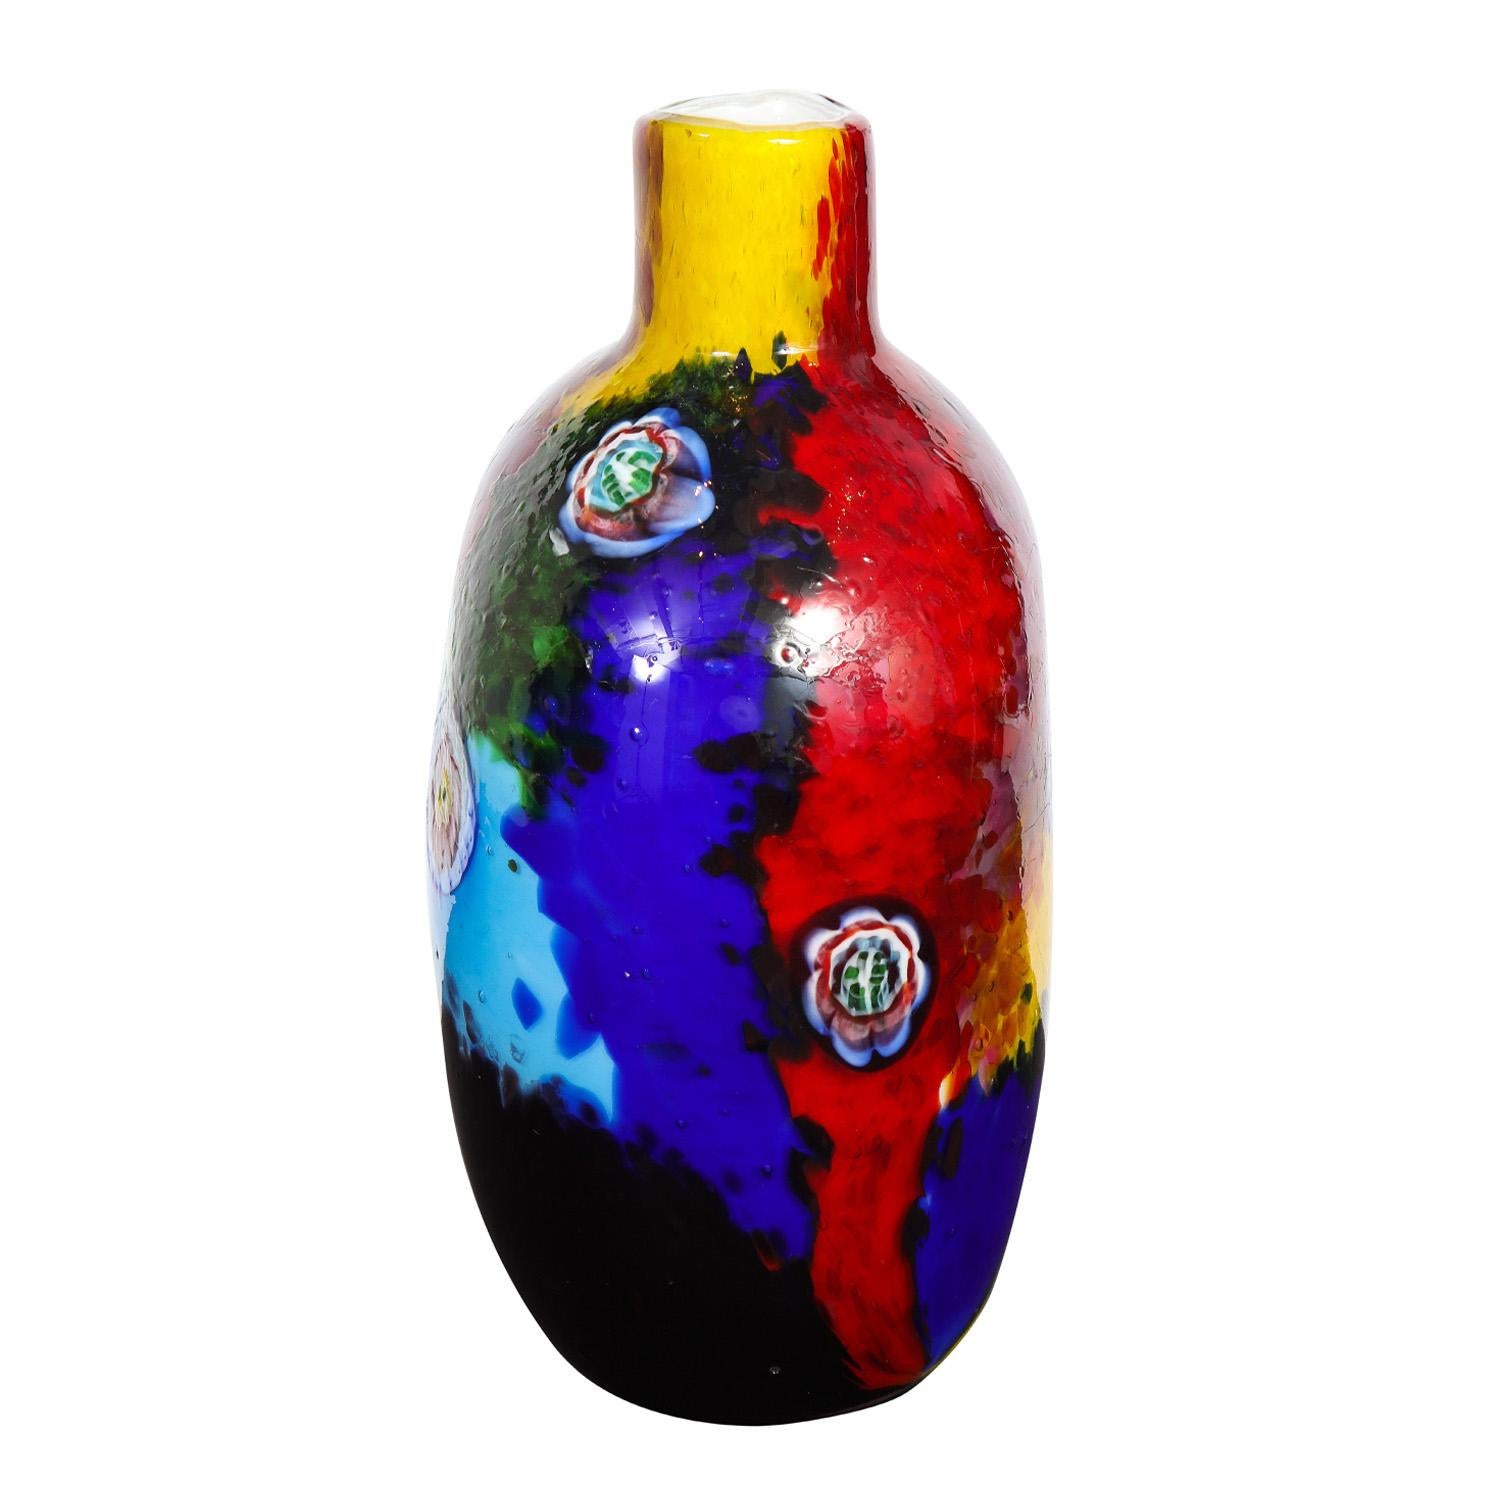 Vase aus mundgeblasenem Glas mit mehrfarbigen Glasfragmenten und komplexen Murrhinen mit einer Innenseite aus Lattimo (weißem Glas) von Arte Vetraria Muranese (A.V.E.M.), Murano Italien, 1960er Jahre. Diese mundgeblasenen Glasstücke von A.V.E.M.